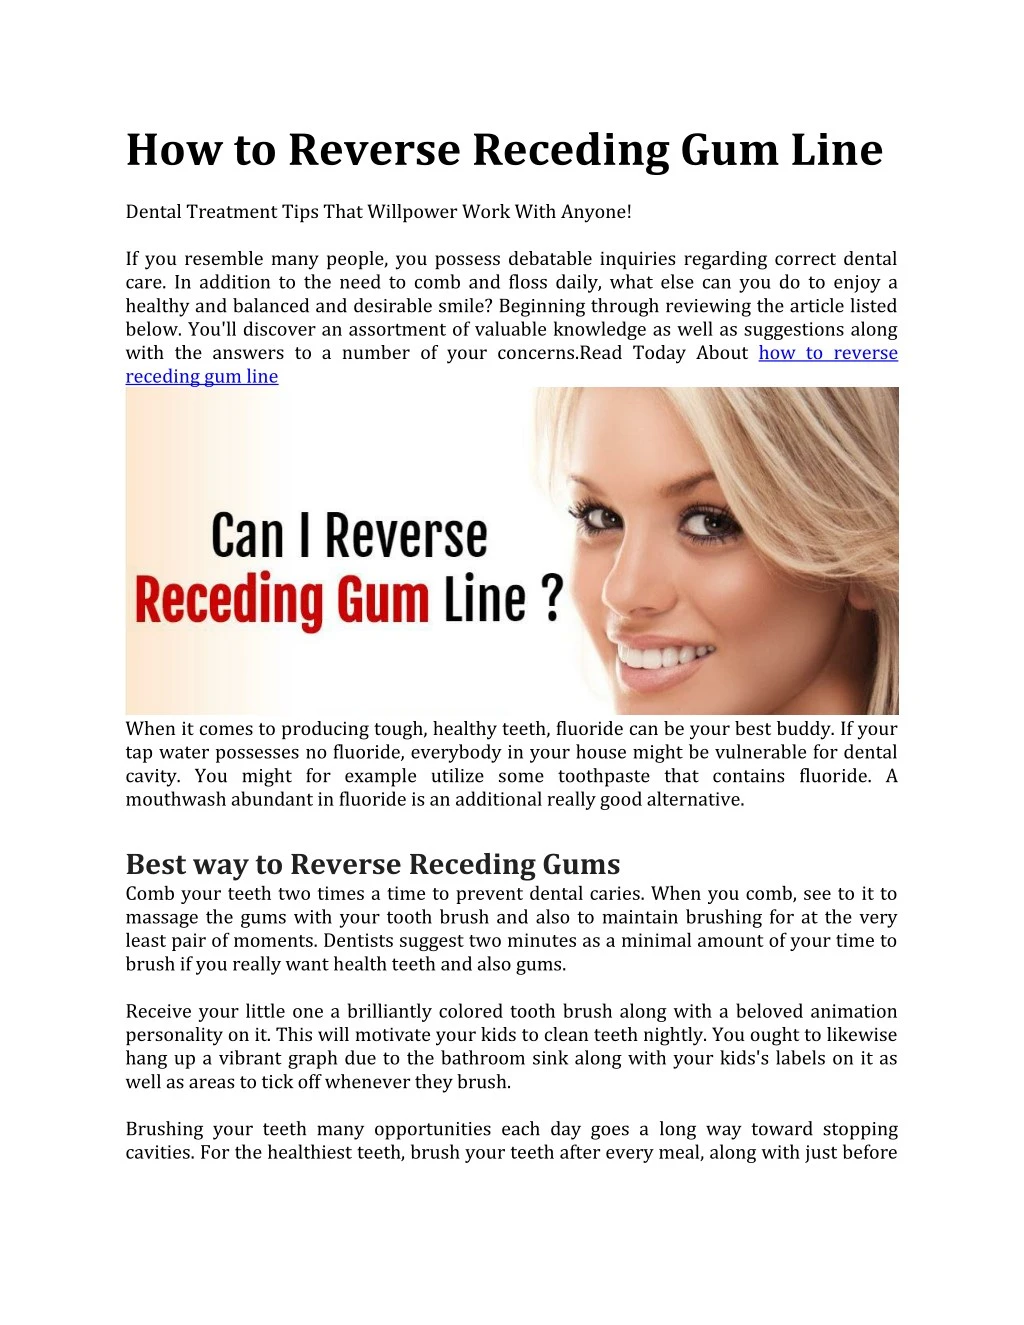 how to reverse receding gum line dental treatment